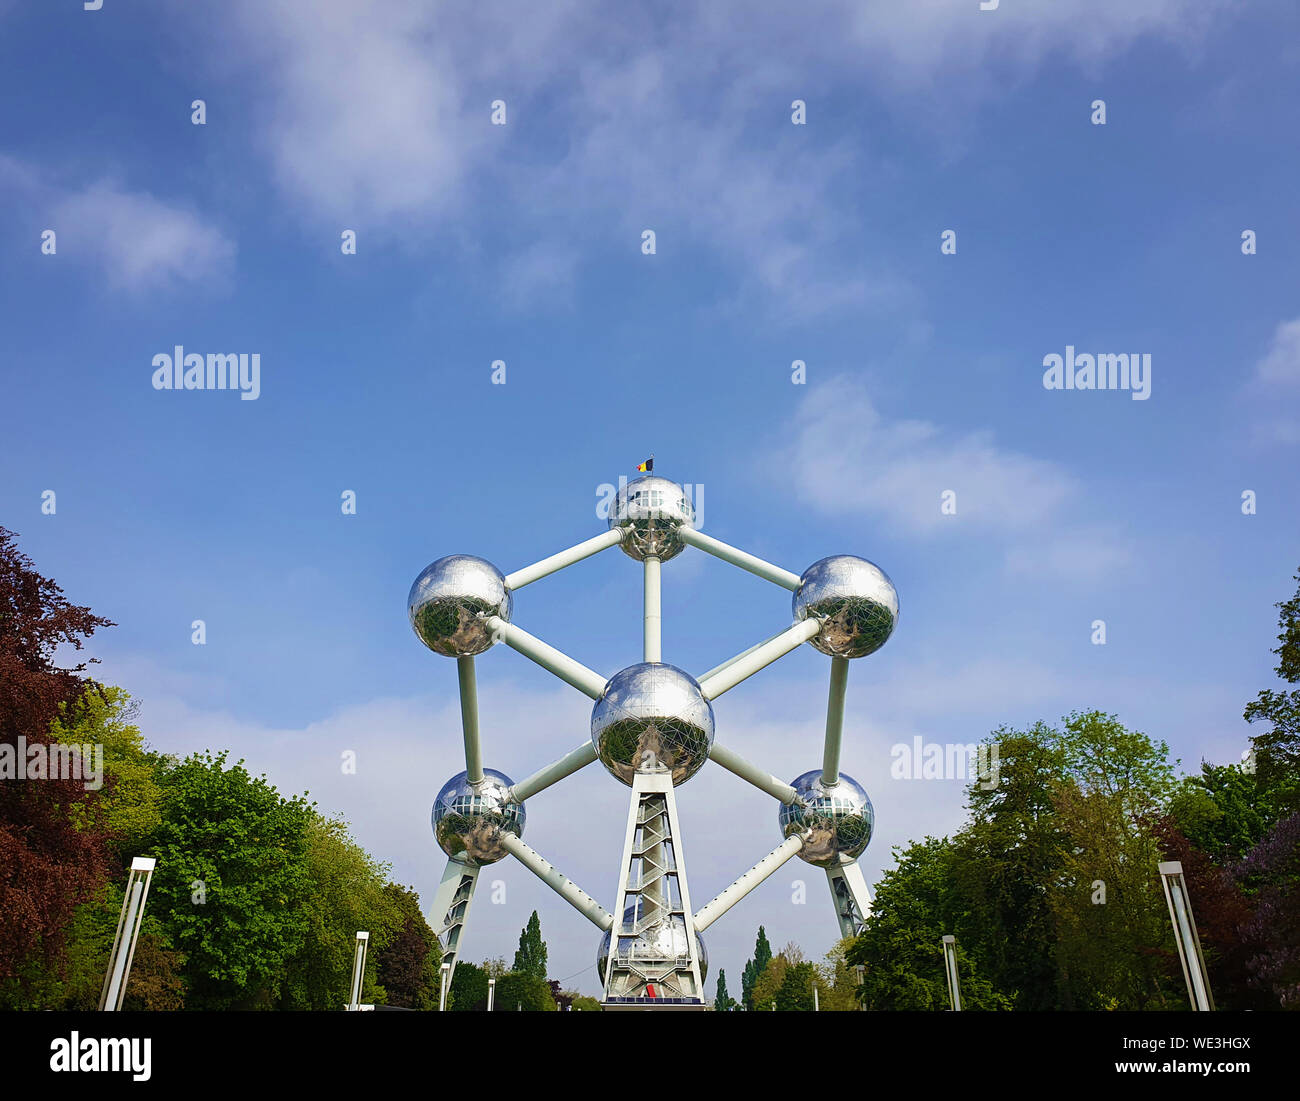 Famoso Atomium landmark tra alberi alley su un cielo blu sullo sfondo di Bruxelles in Belgio. Foto Stock